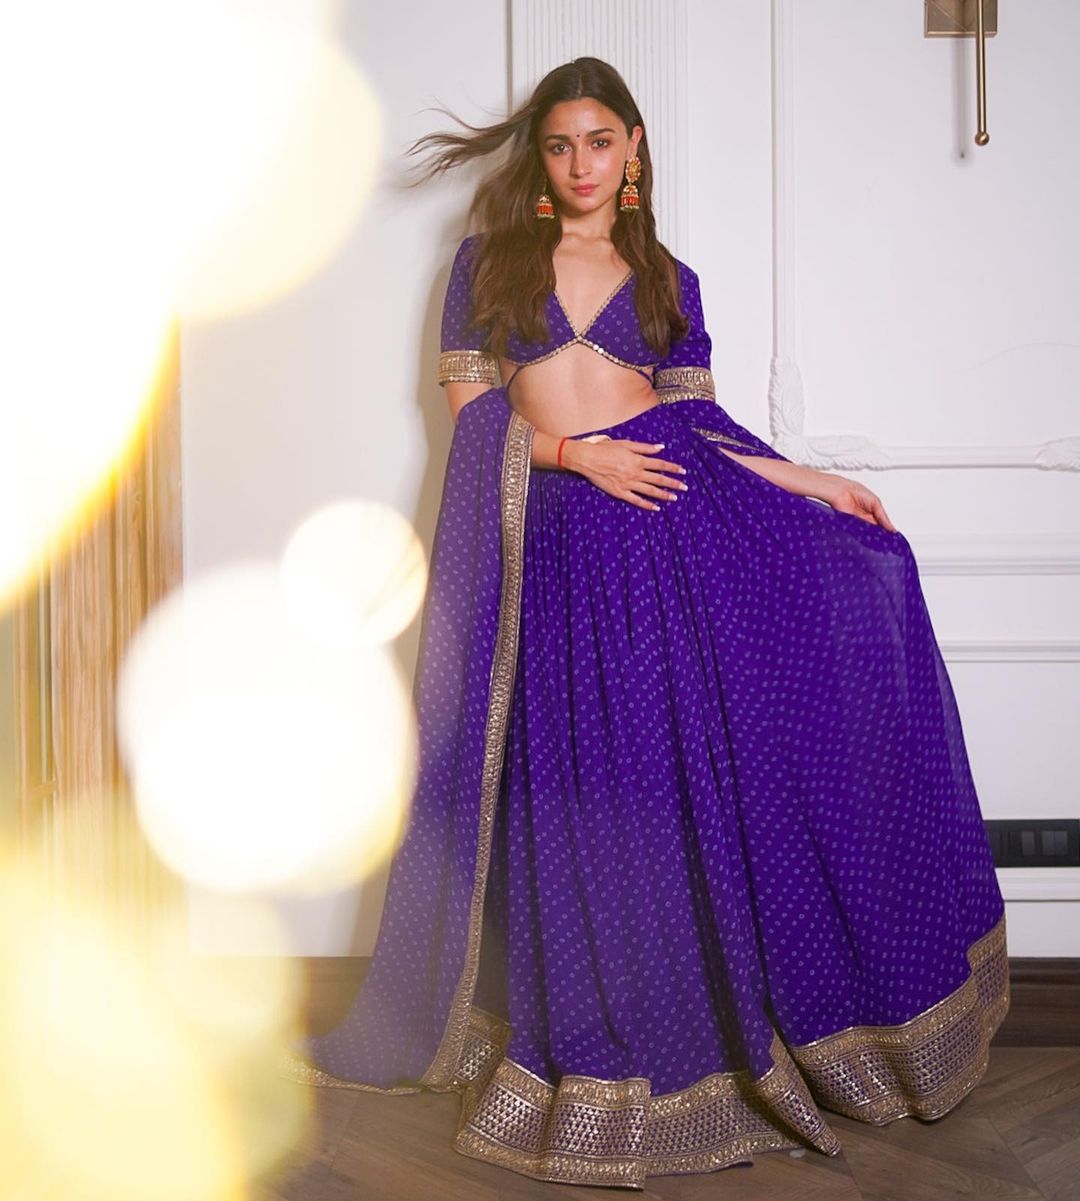 Alia Bhatt looks charming in the purple lehenga choli